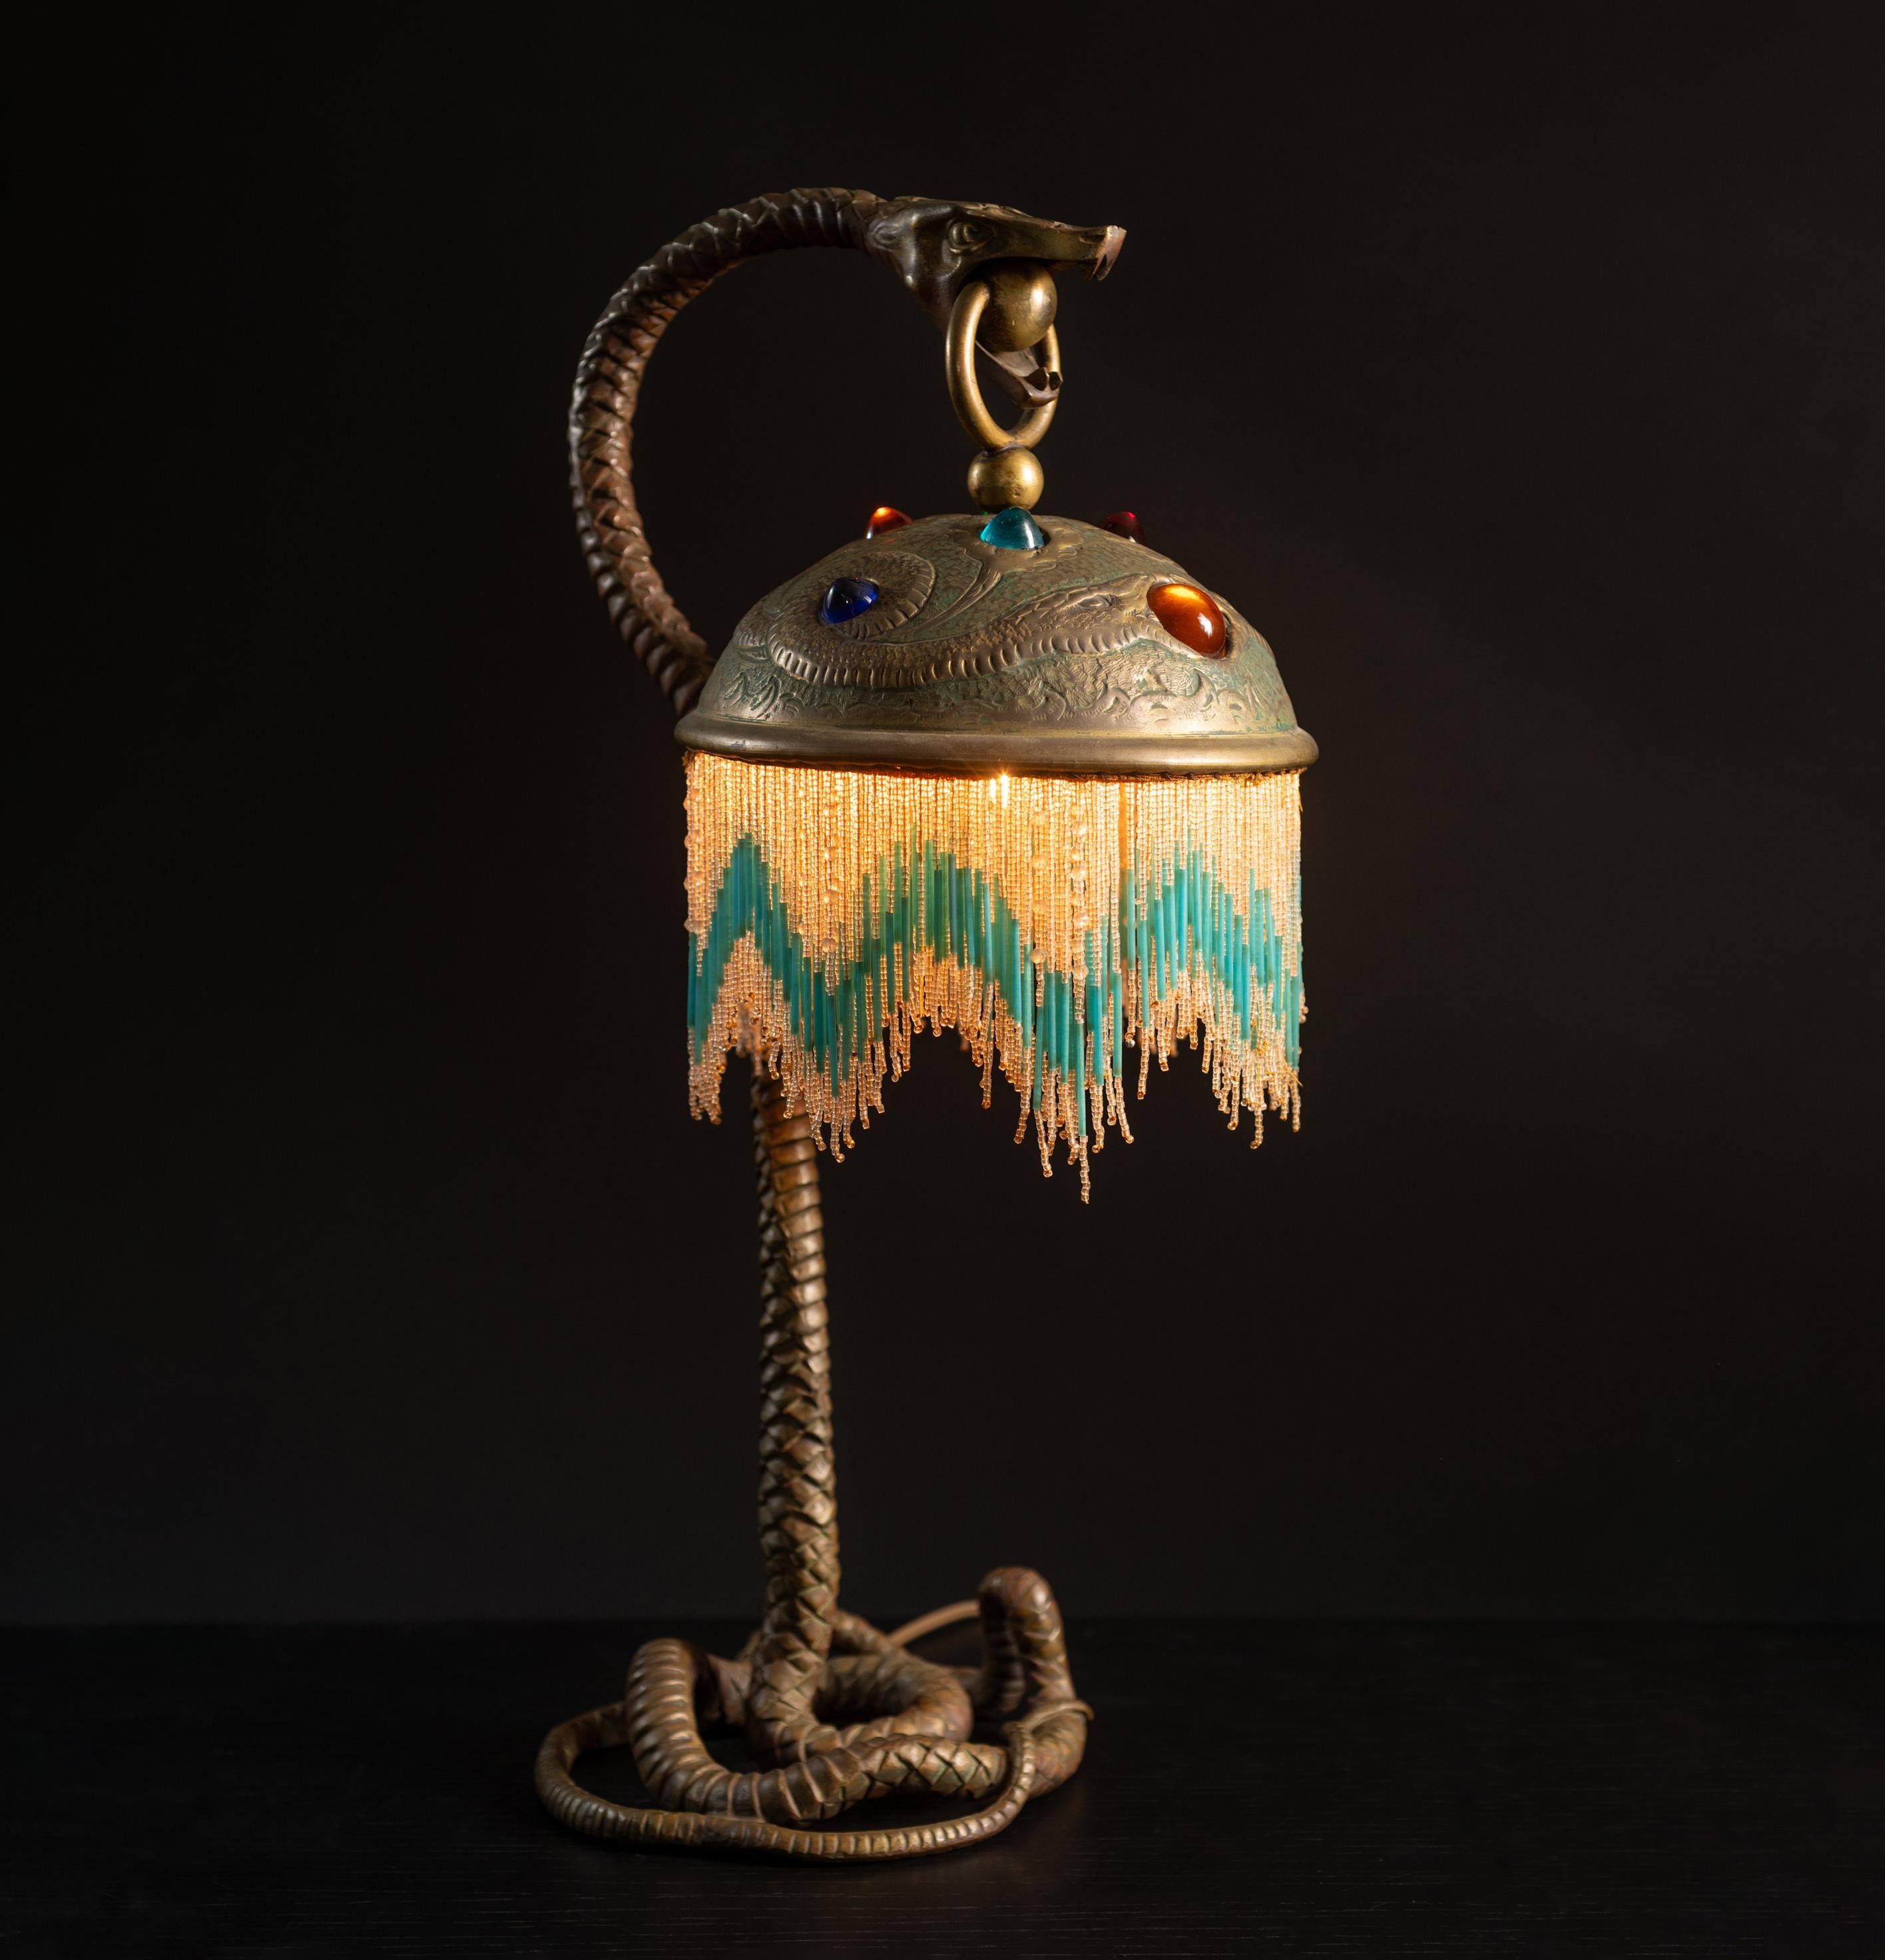 Über die Herkunft dieser erstaunlichen Lampe ist wenig bekannt, außer dass sie um 1900 aus Frankreich stammt.